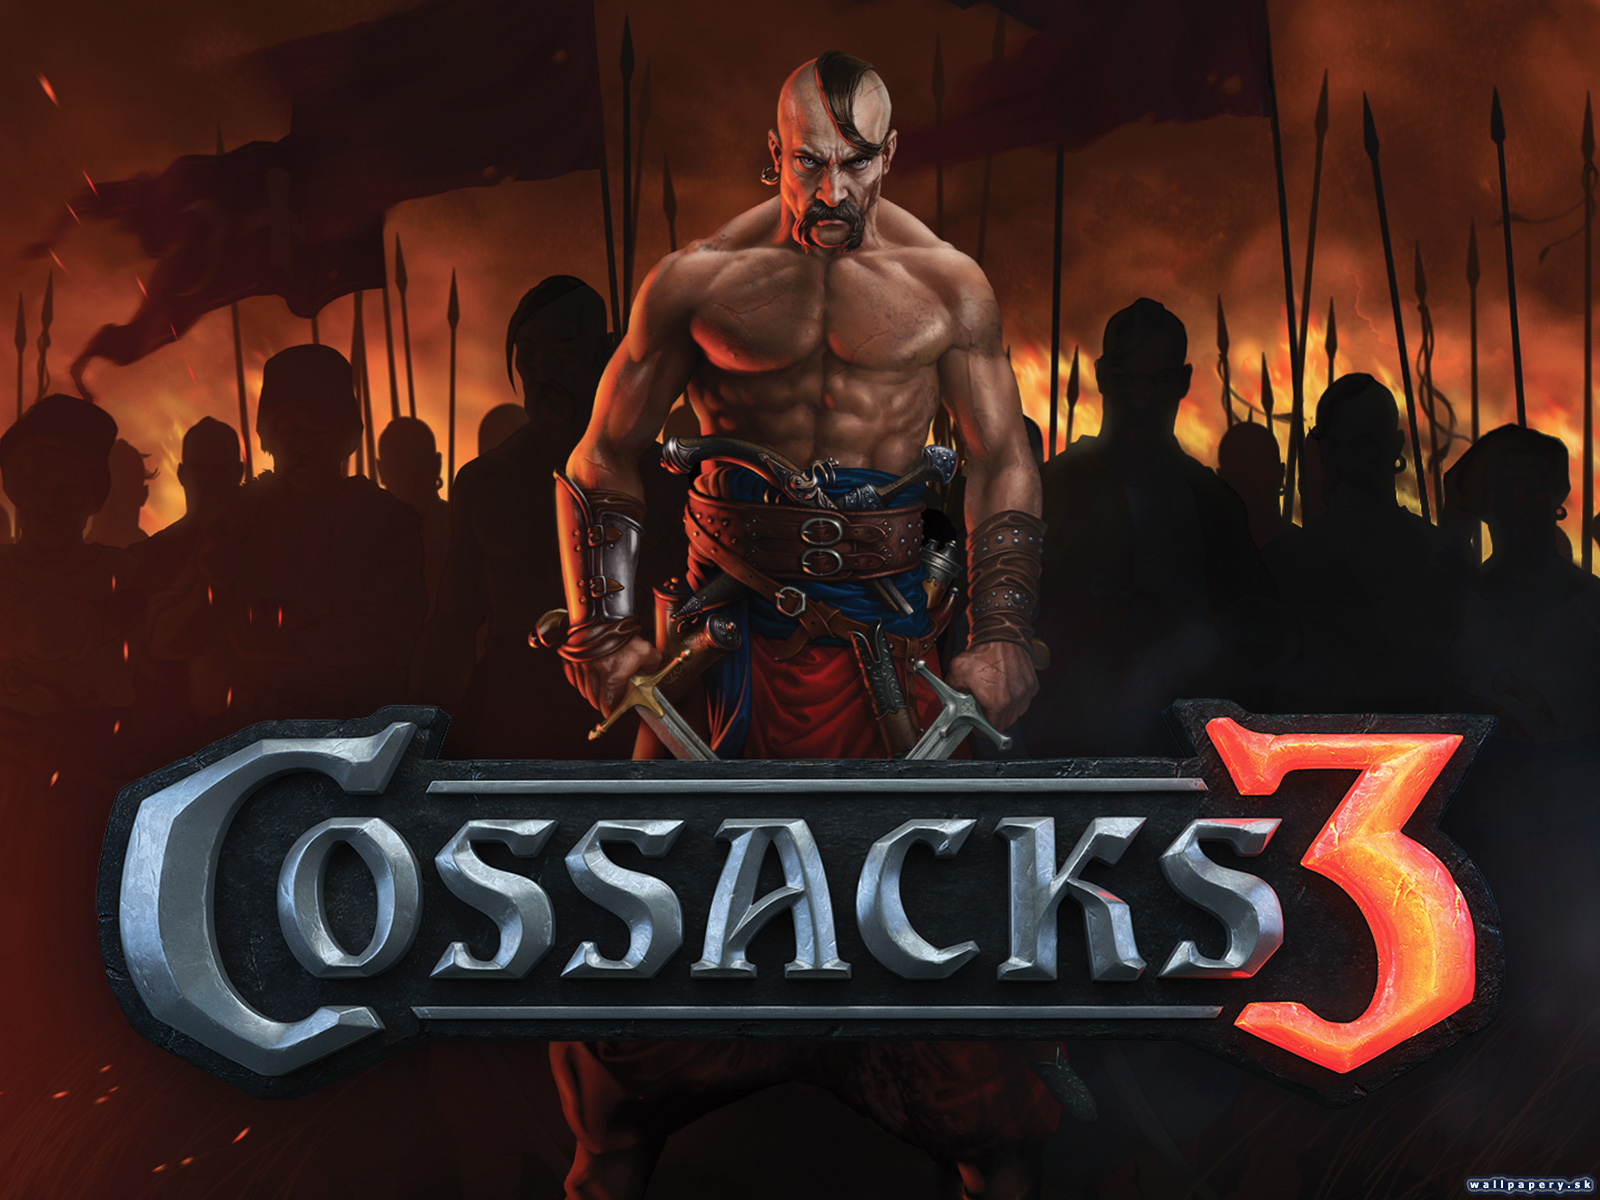 Cossacks 3 - wallpaper 1